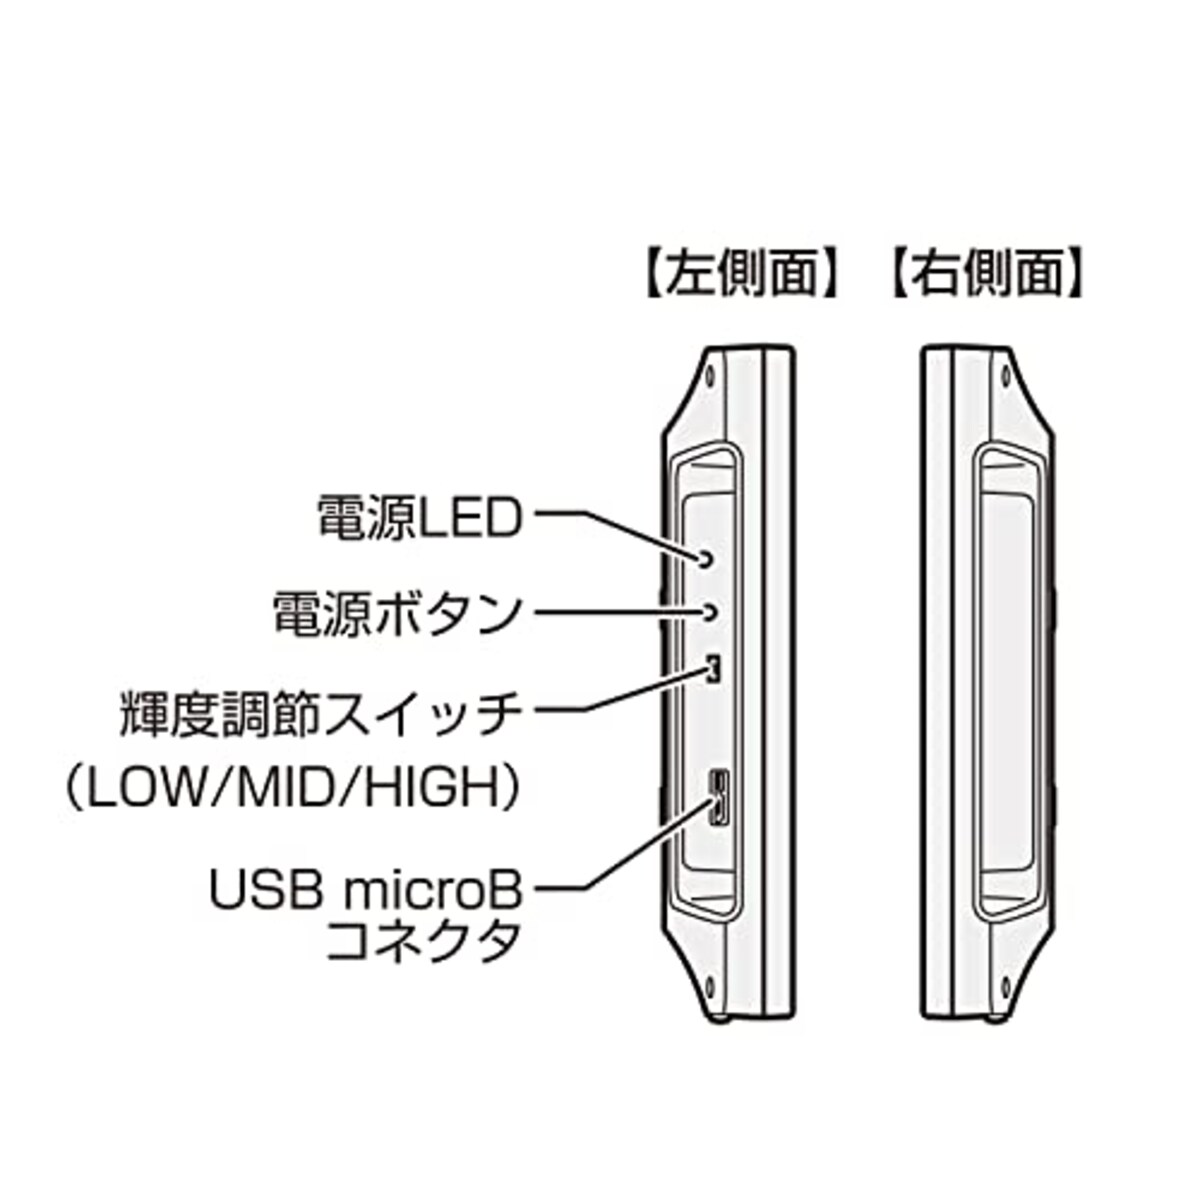  センチュリー USB入力専用 投影型静電容量方式10.1インチマルチタッチモニター LCD-10000UT2_FP画像5 